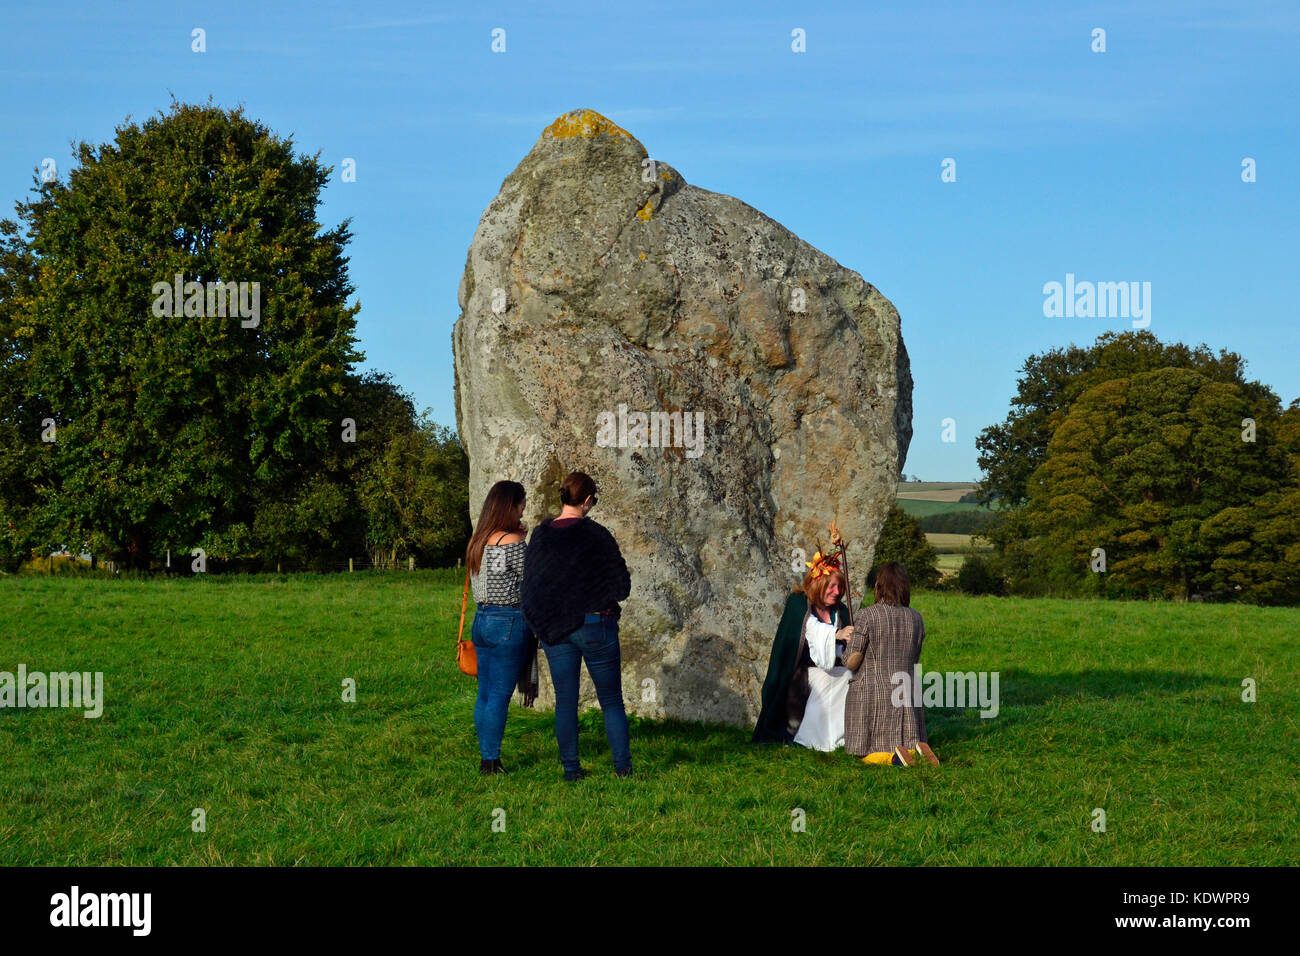 Cérémonie druide, prêtresse druide à Avebury Henge Stone Circle, Wiltshire. Transgenre. Banque D'Images